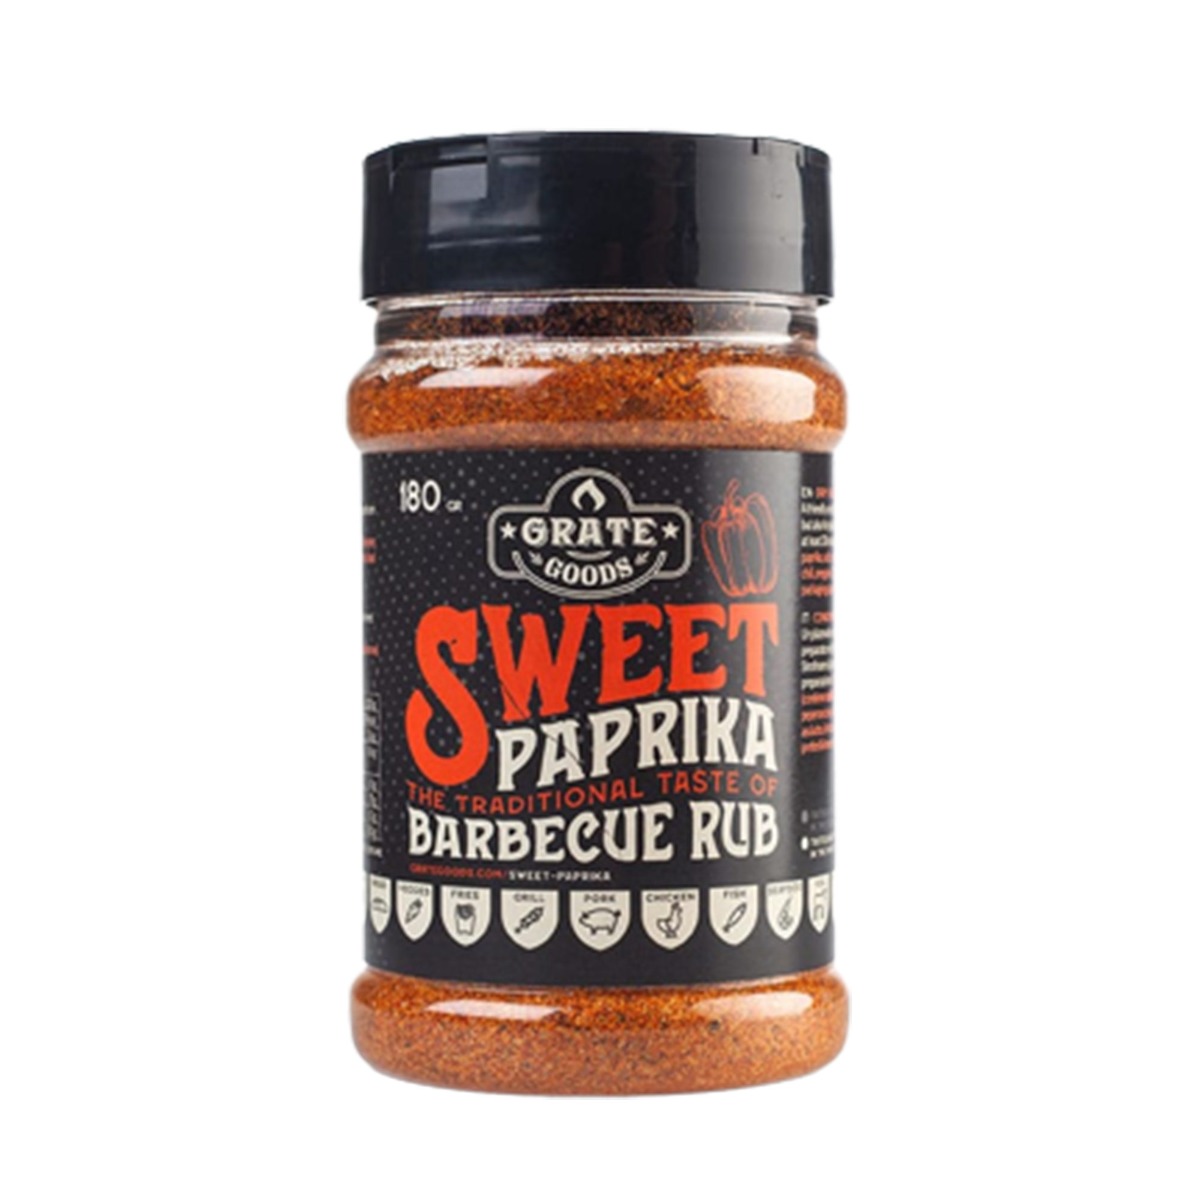 Μπαχαρικά Sweet Paprika BBQ Rub, 180g – Grate Goods®